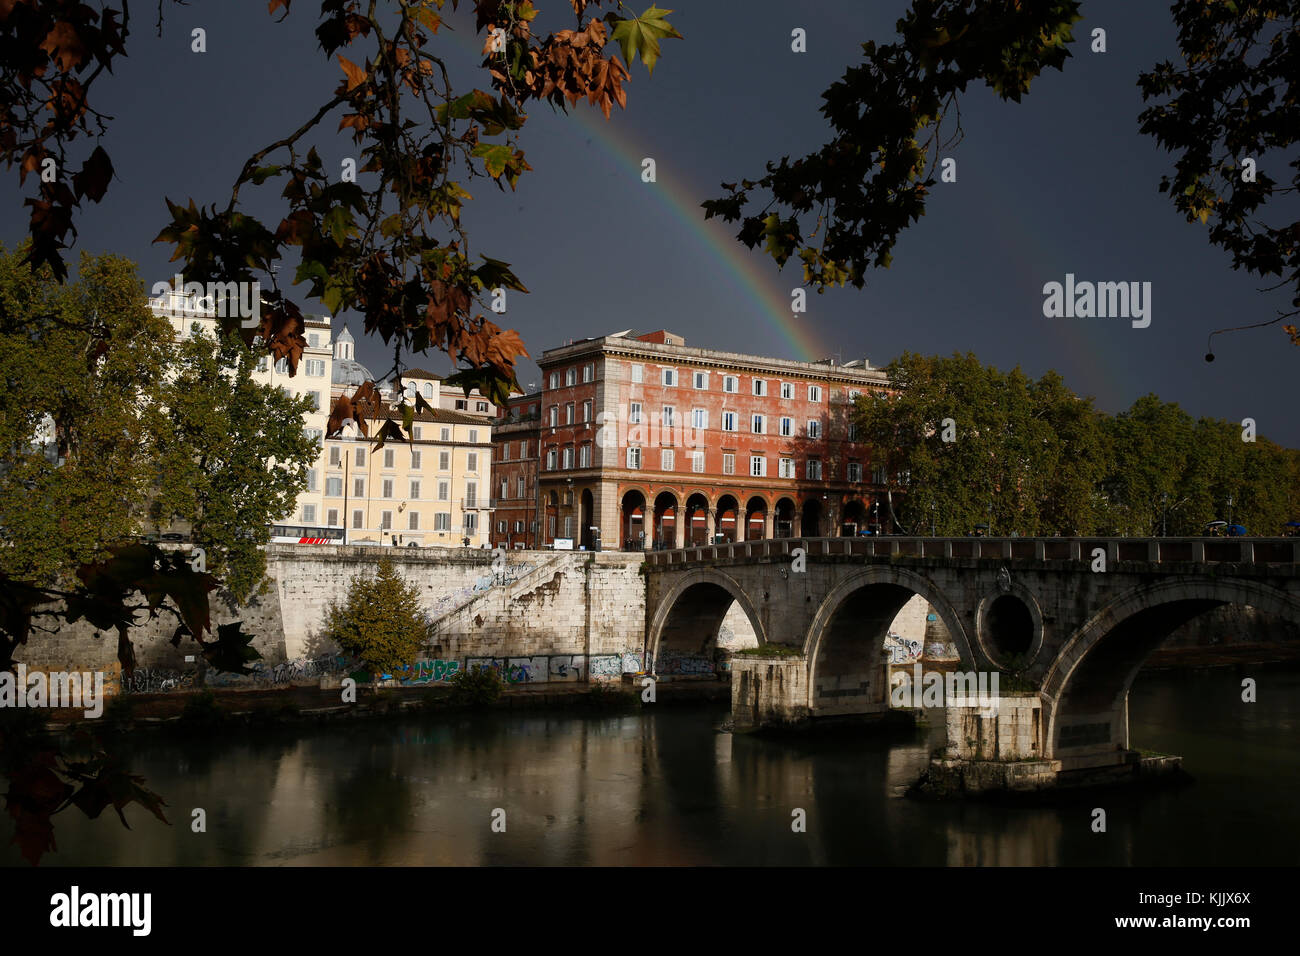 Arco iris sobre el puente Sisto, Roma. Italia. Foto de stock